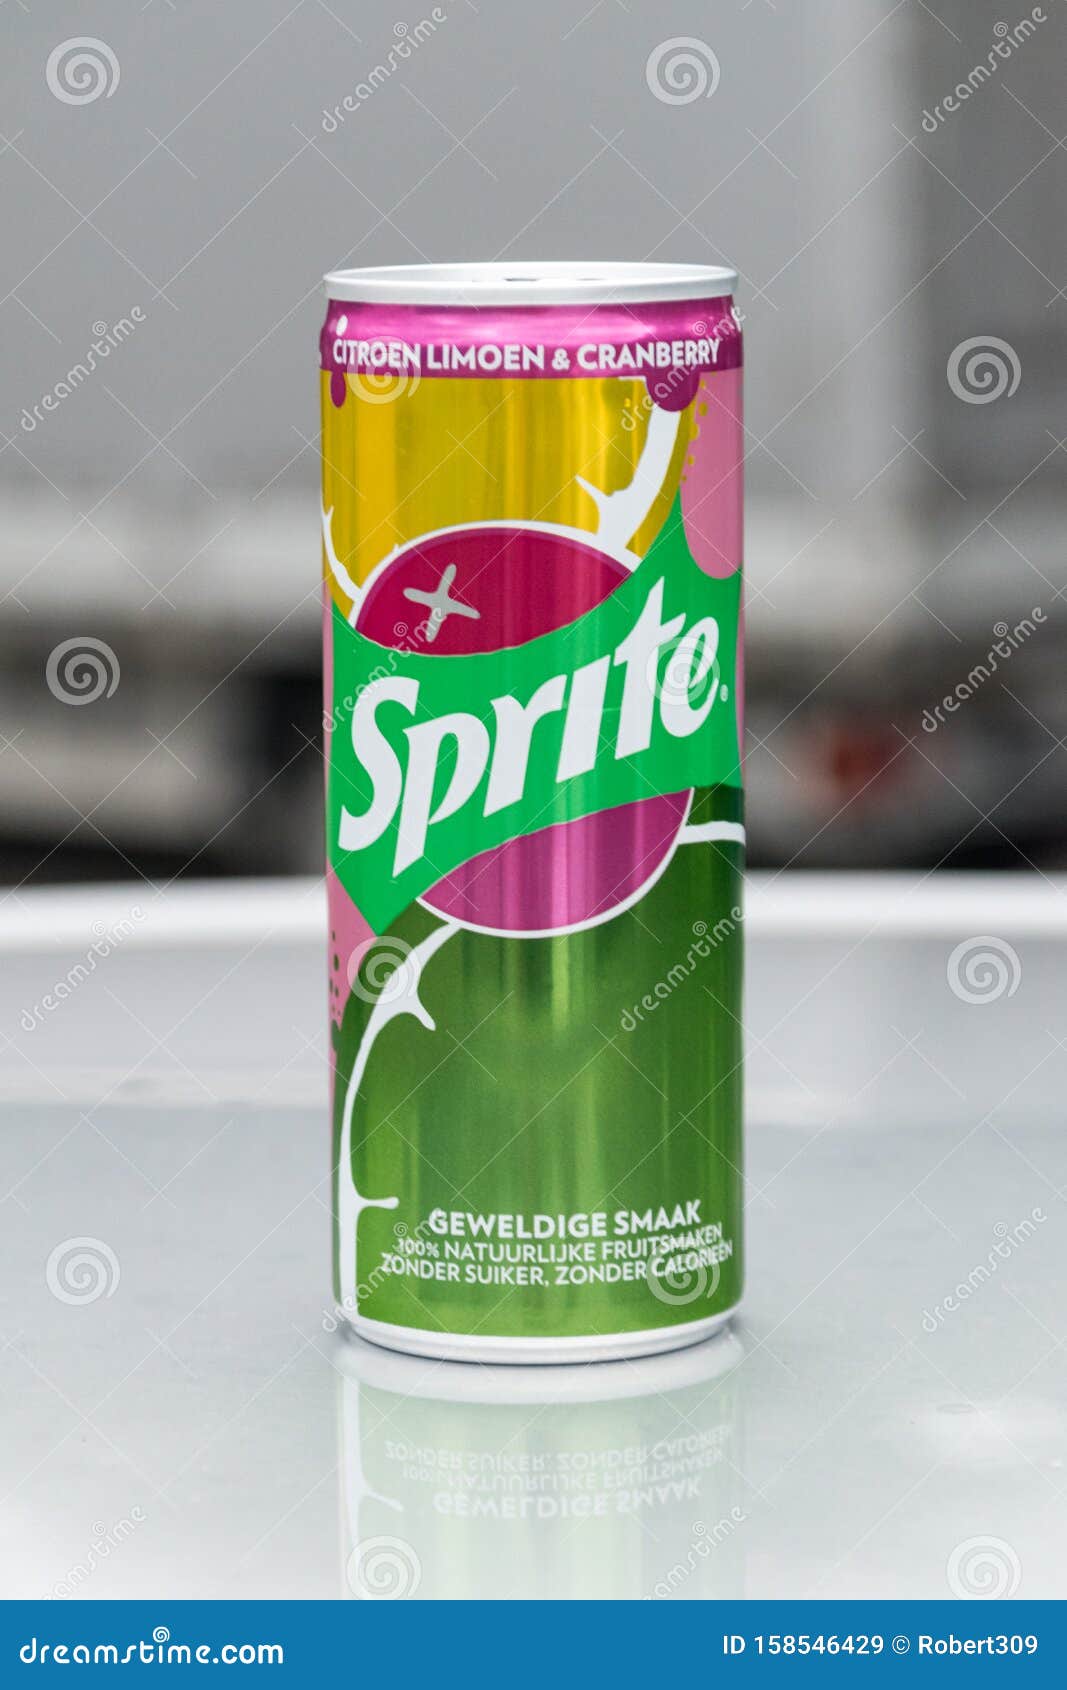 https://thumbs.dreamstime.com/z/dosen-von-sprite-limone-cranberry-aromatisierten-soda-softdrinks-ist-marke-geh%C3%B6rt-coca-cola-company-terschuur-niederlande-158546429.jpg